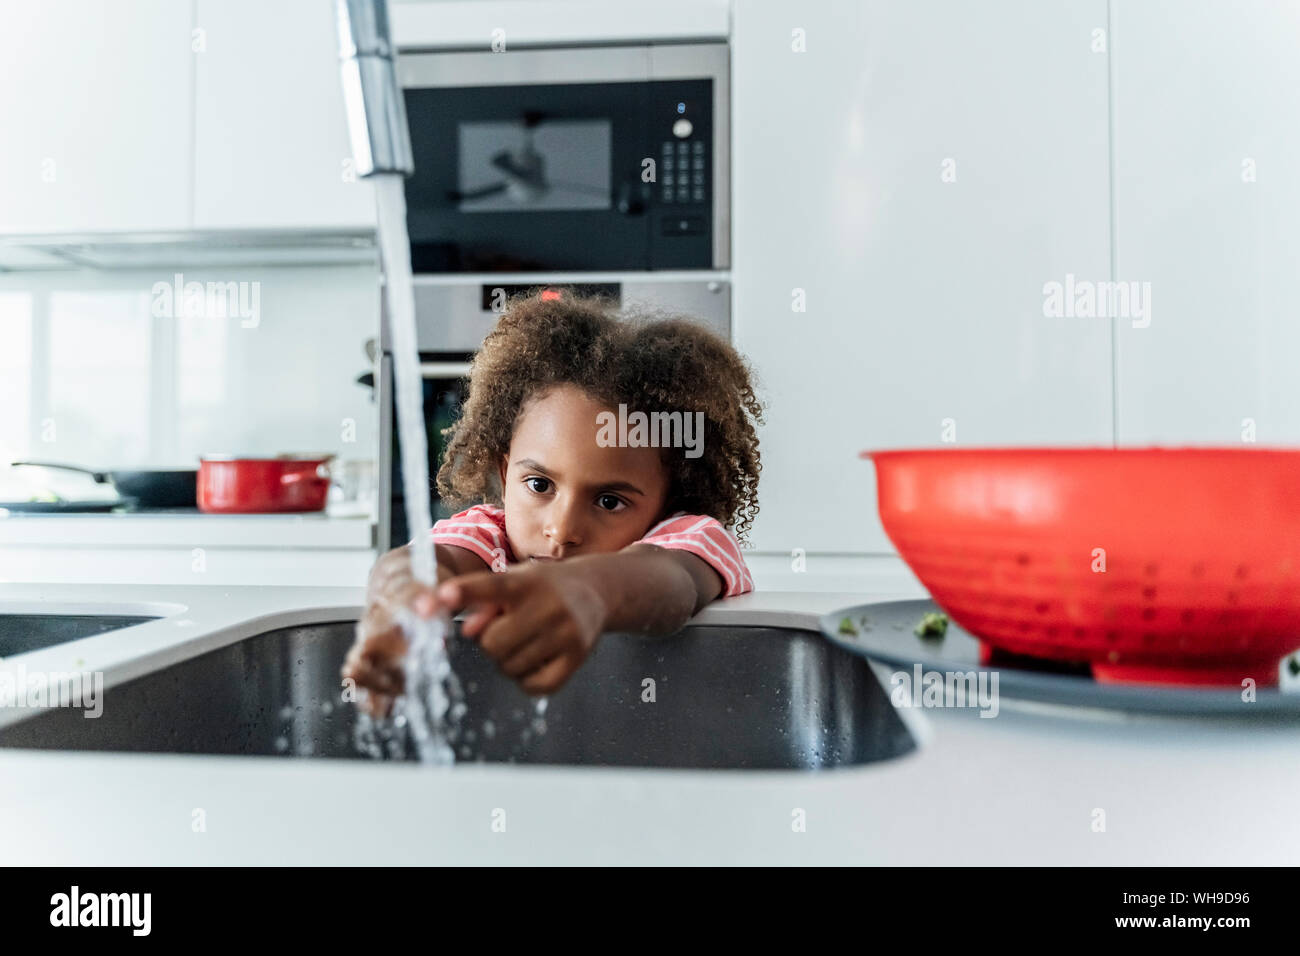 girl washing herself in kitchen sink